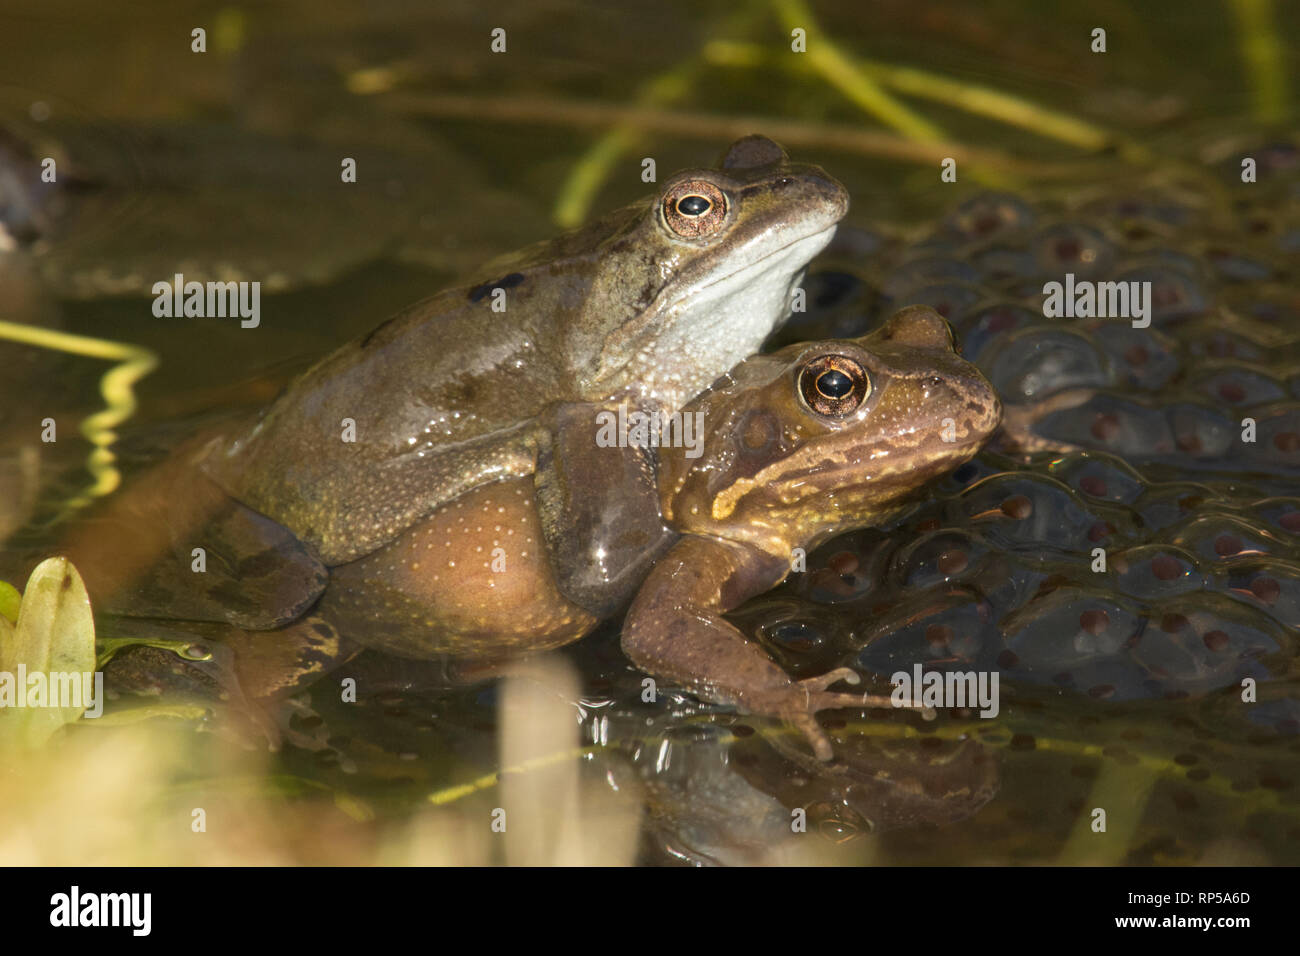 Gemeinsame Frog, Rana temporaria, männliche und weibliche Paarung in Frog spawn, Paar in Amplexus, Laich, Februar, Garten Teich Stockfoto